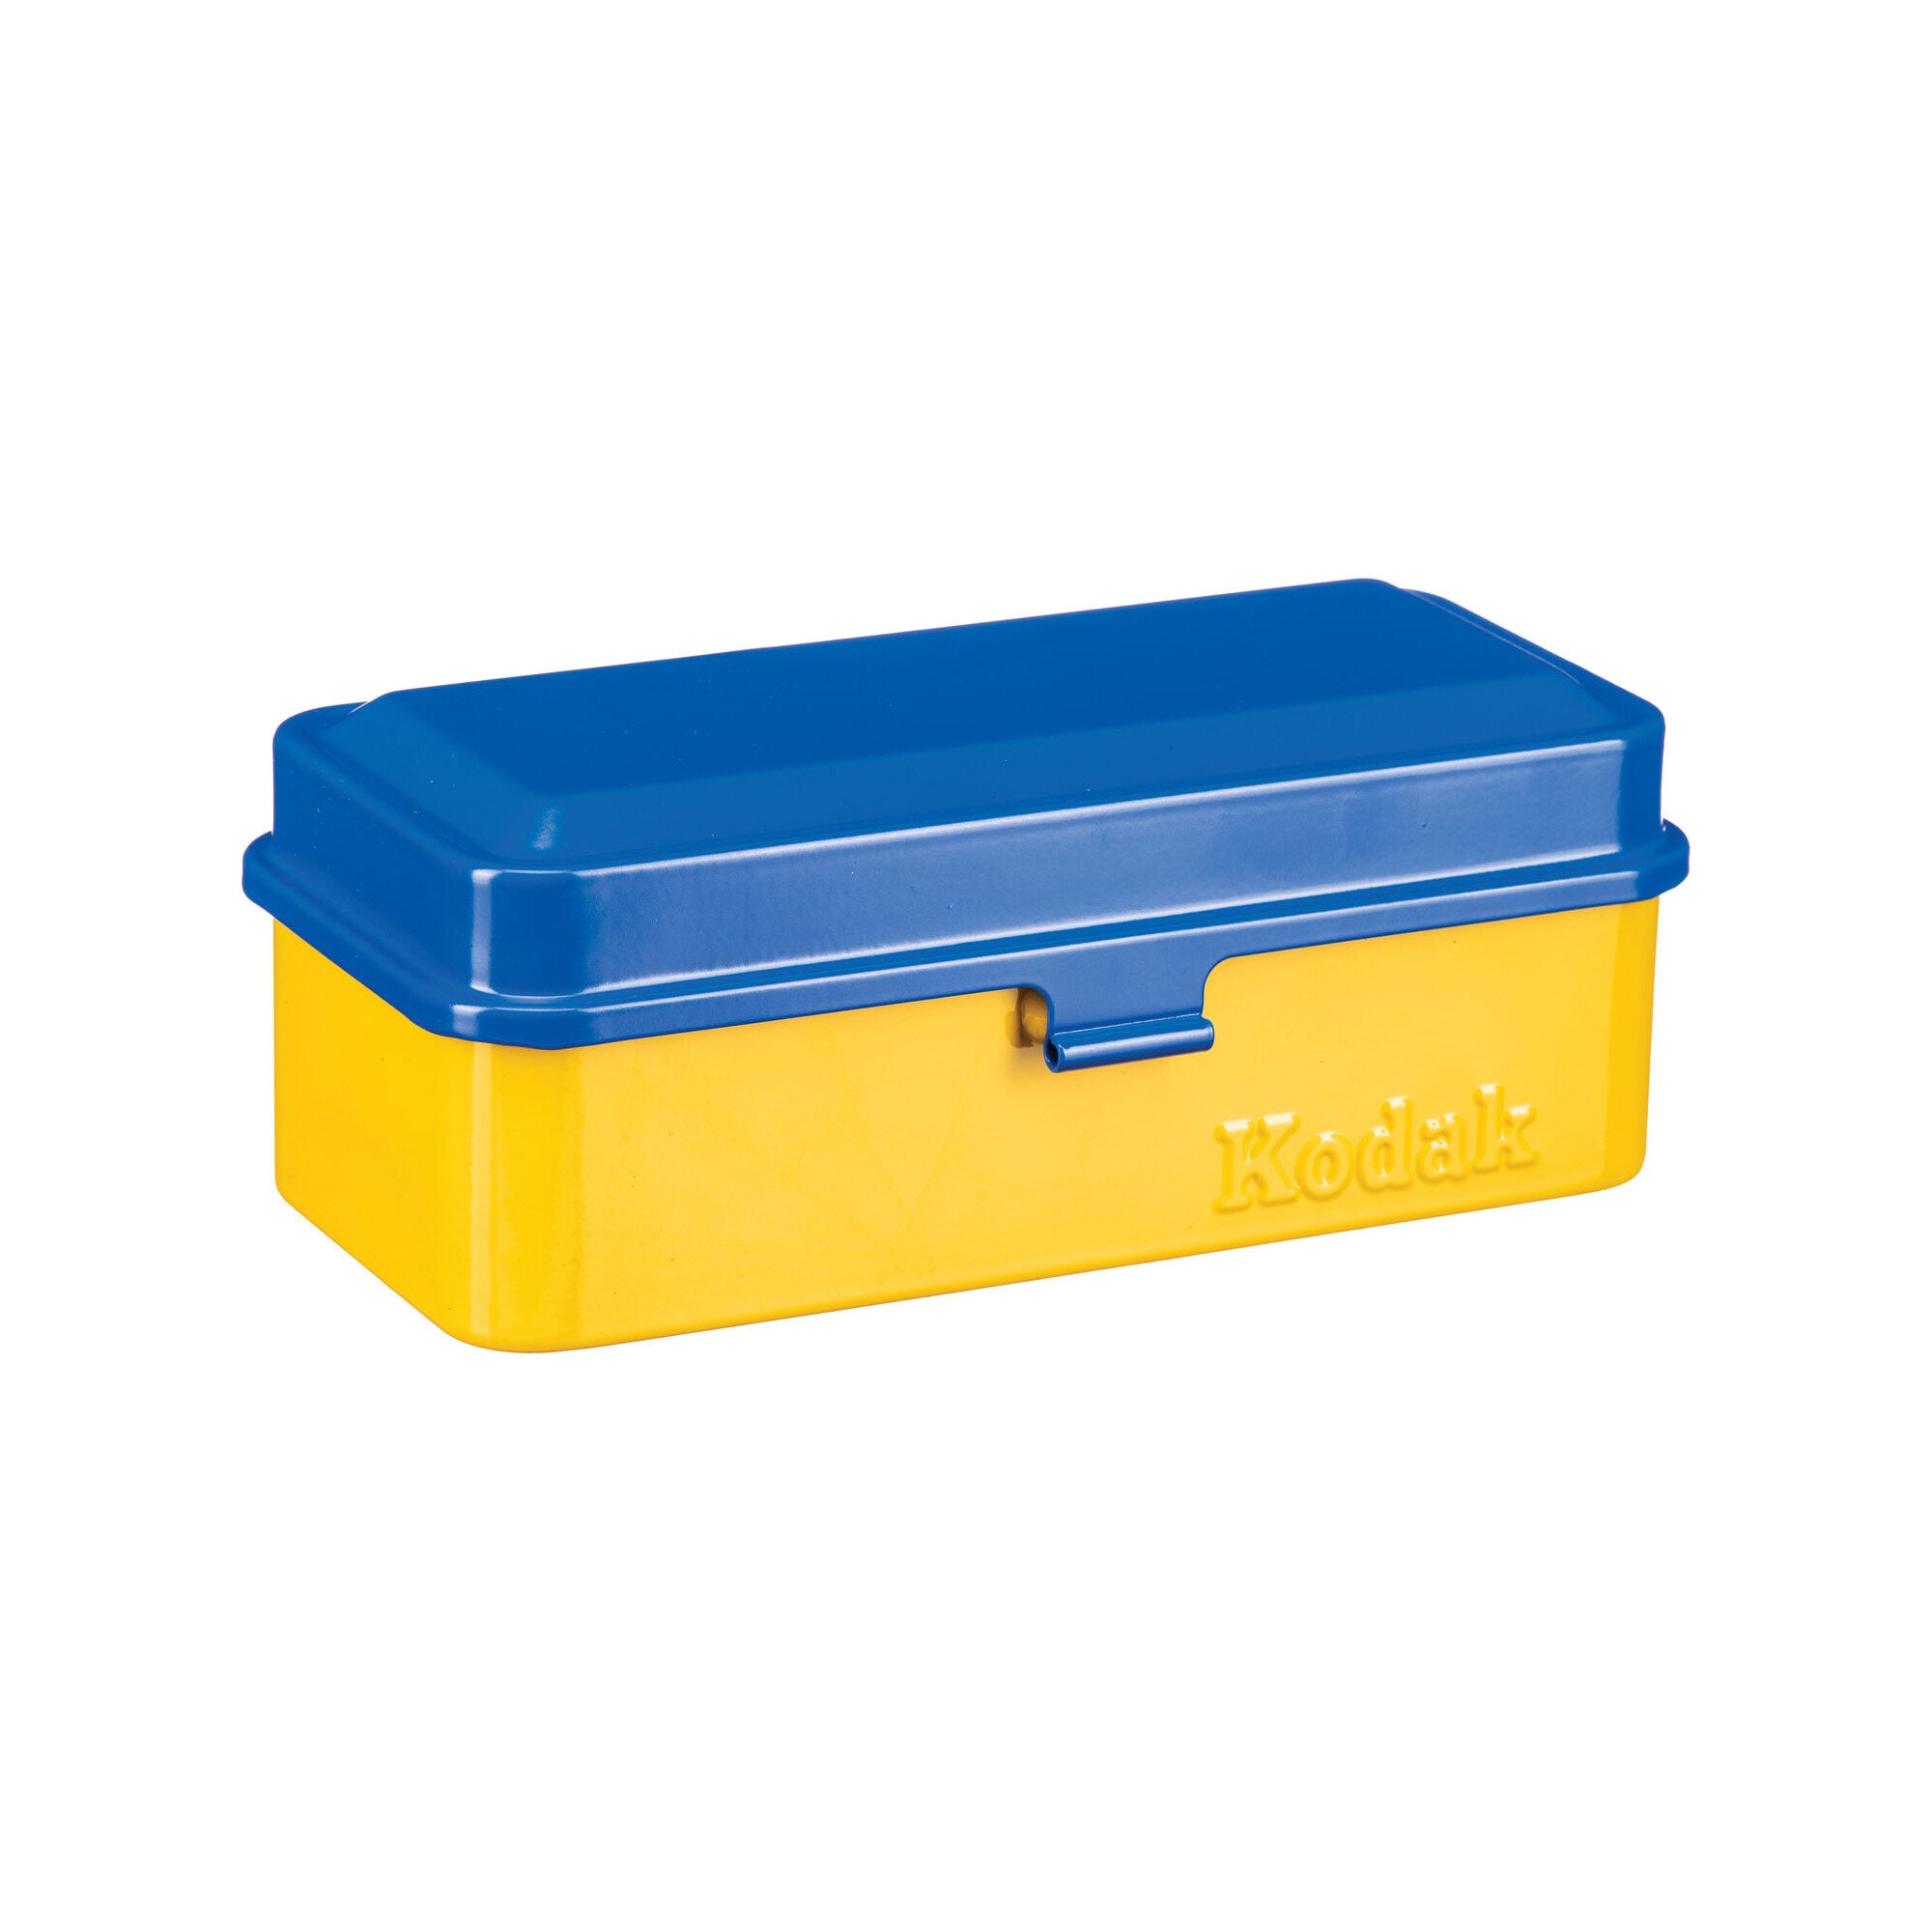 Kodak Film Steel Case Yellow with Blue lid 120/135